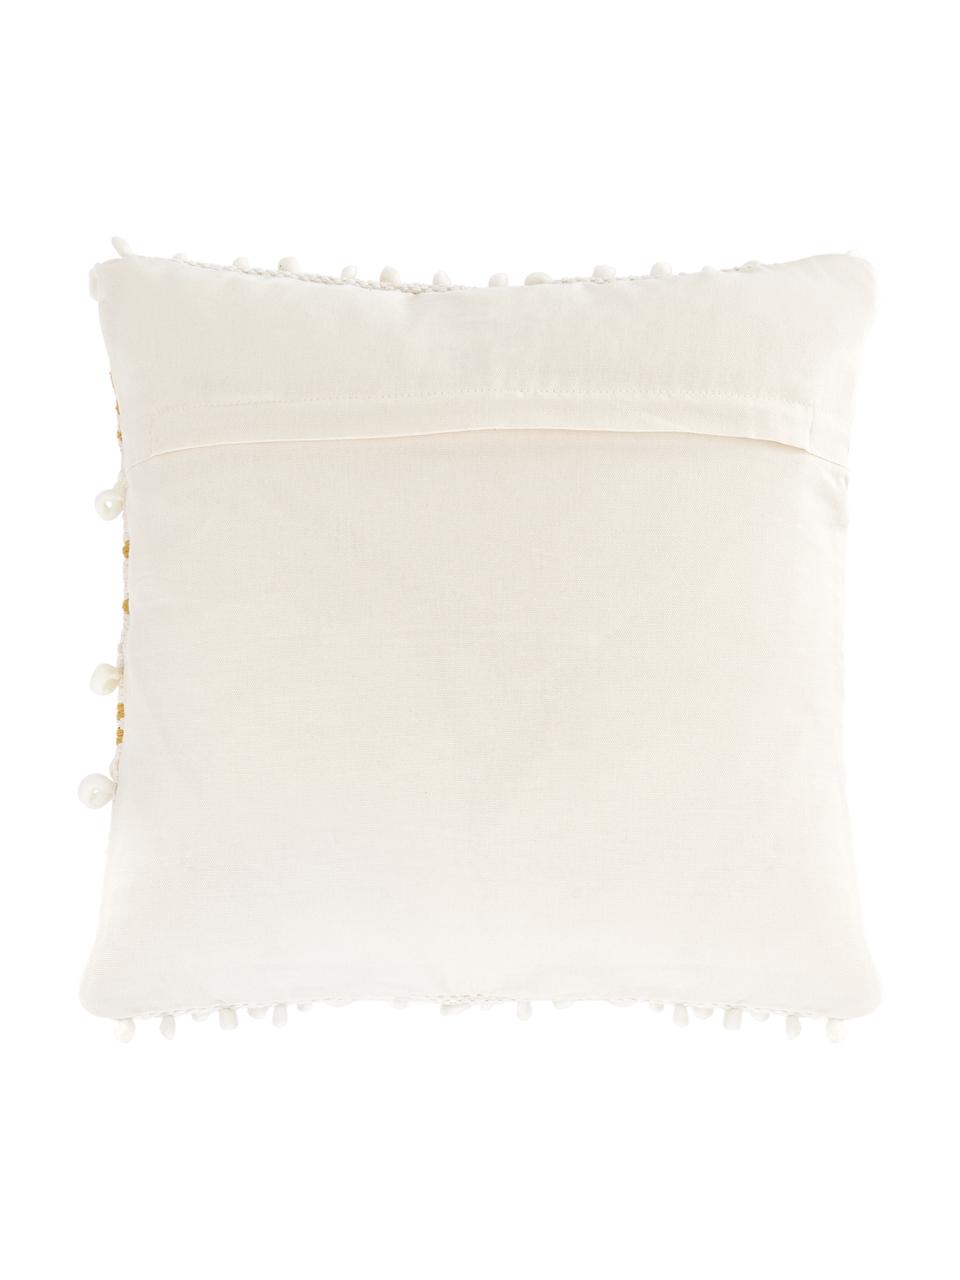 Poszewka na poduszkę Paco, 80% bawełna, 20% wełna, Musztardowy, kremowobiały, S 45 x D 45 cm